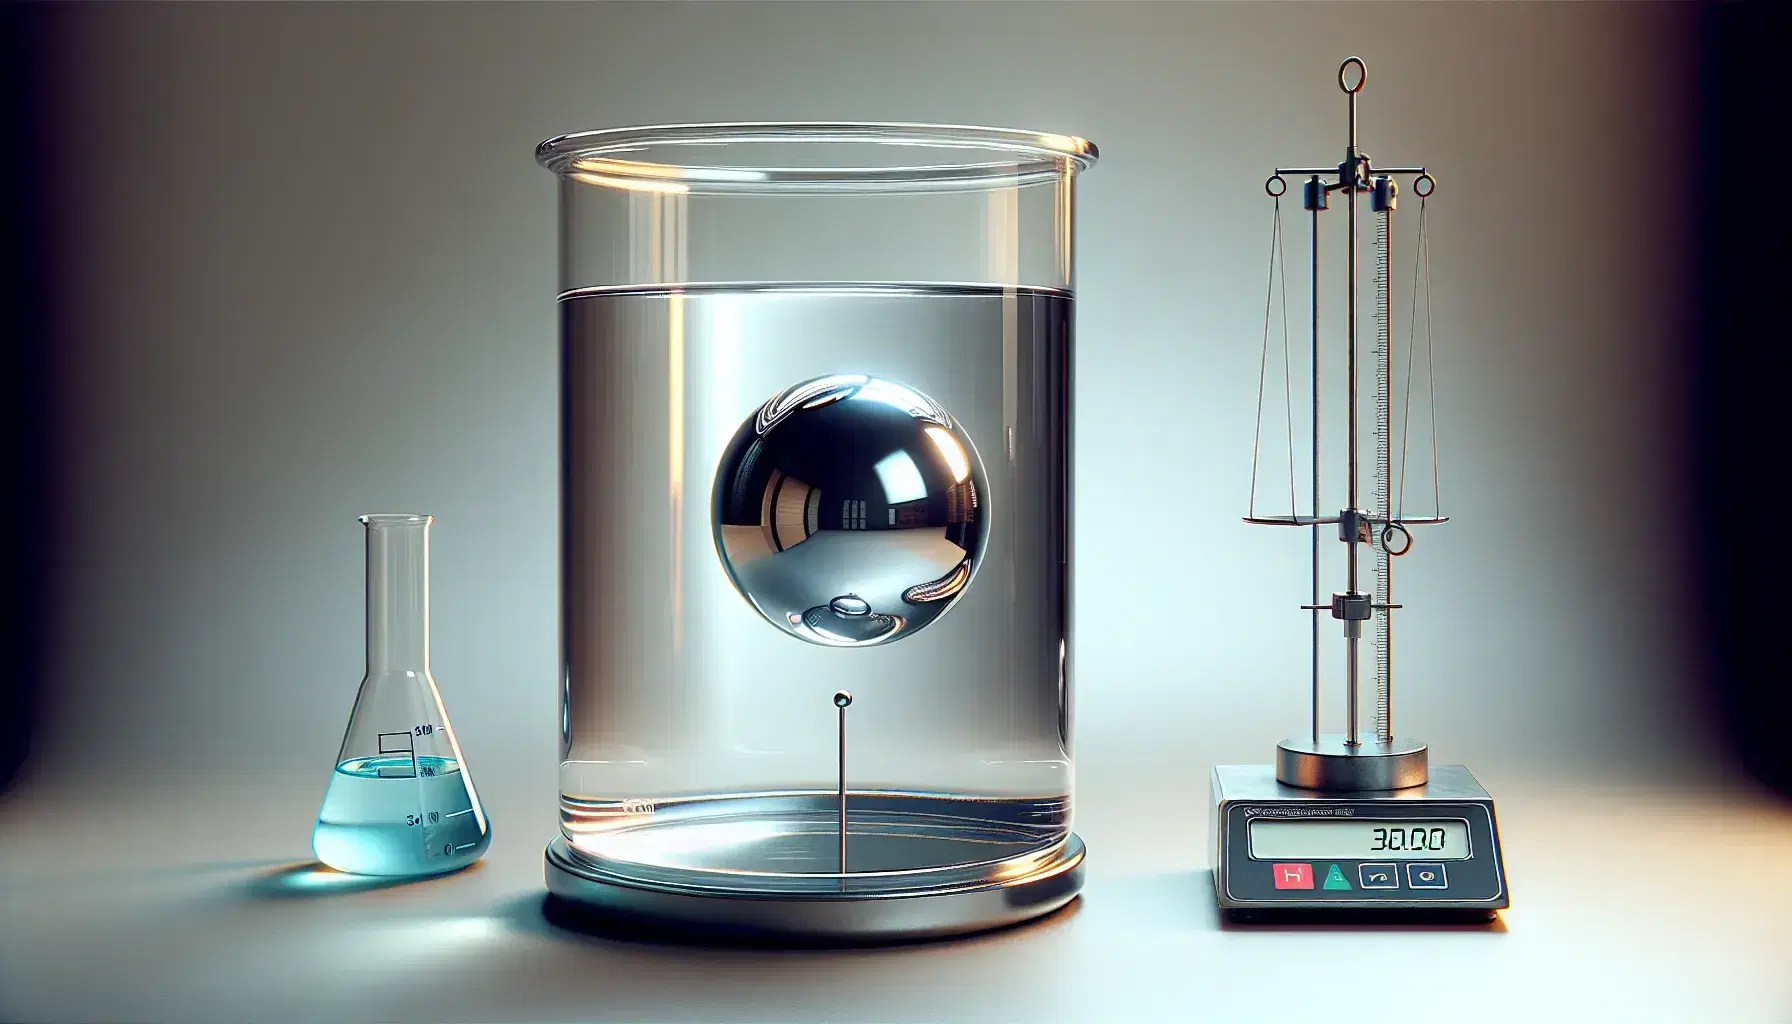 Experimento científico con esfera metálica flotante en recipiente de agua, balanza de laboratorio y cilindro graduado con líquido azul.